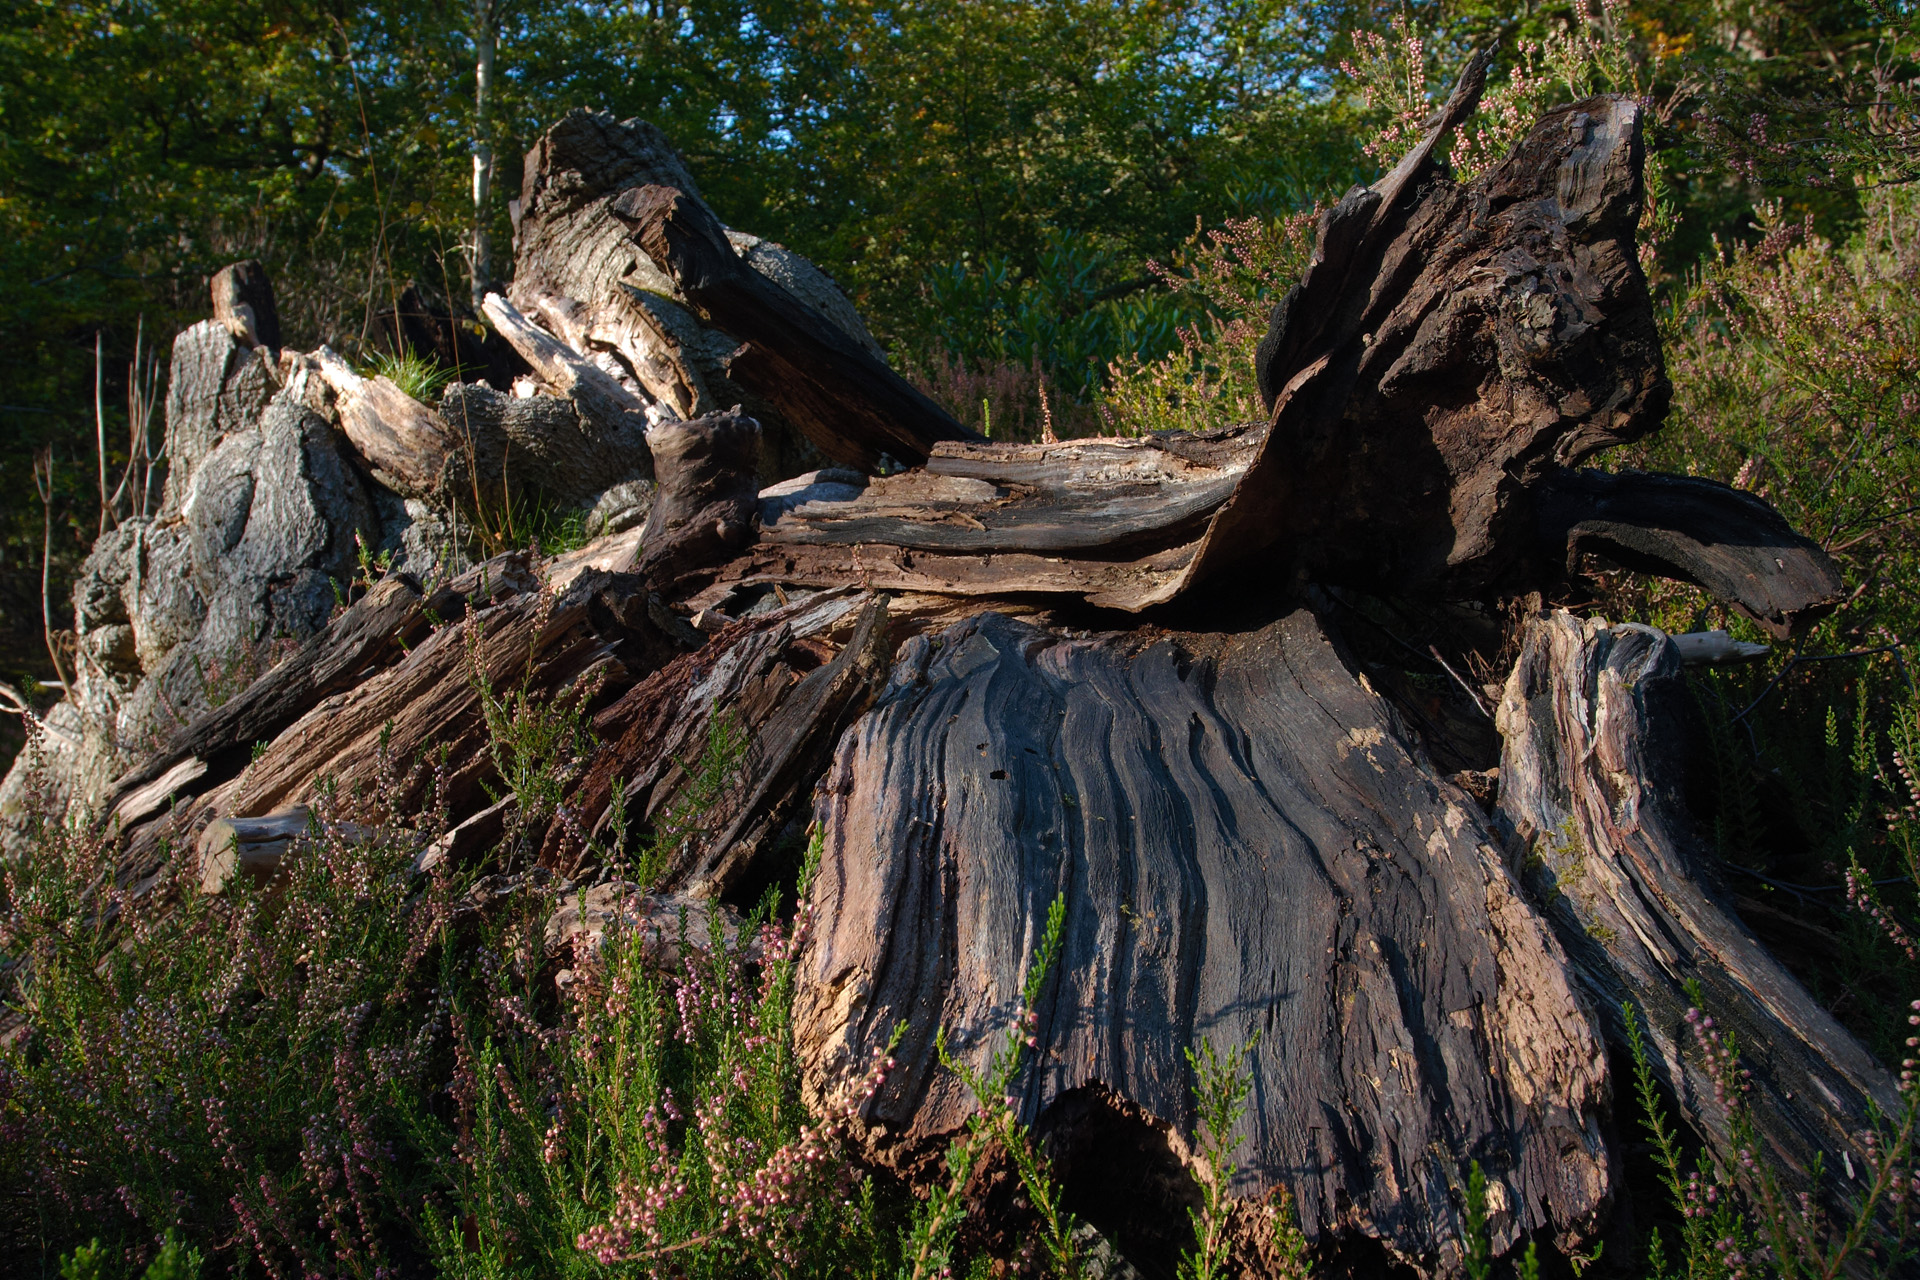 Weathered Wood at Burnham Beeches